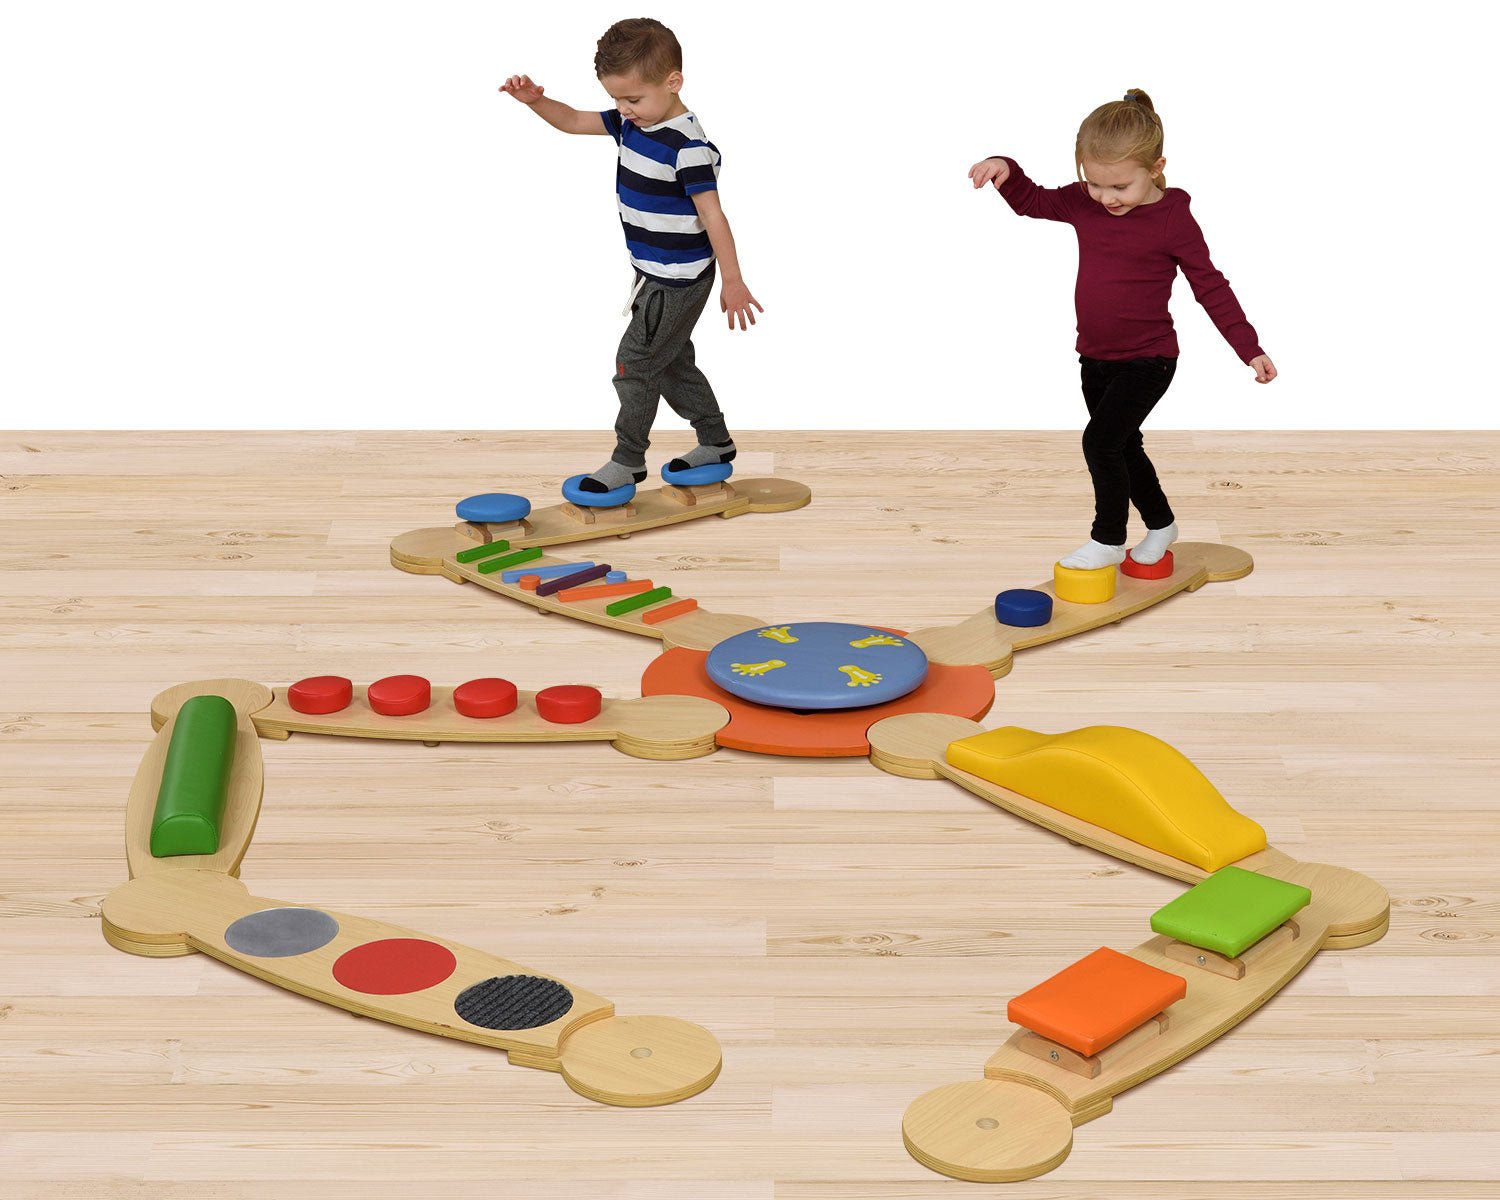 Sensory Balance Beams 3 | Learning and Exploring Through Play